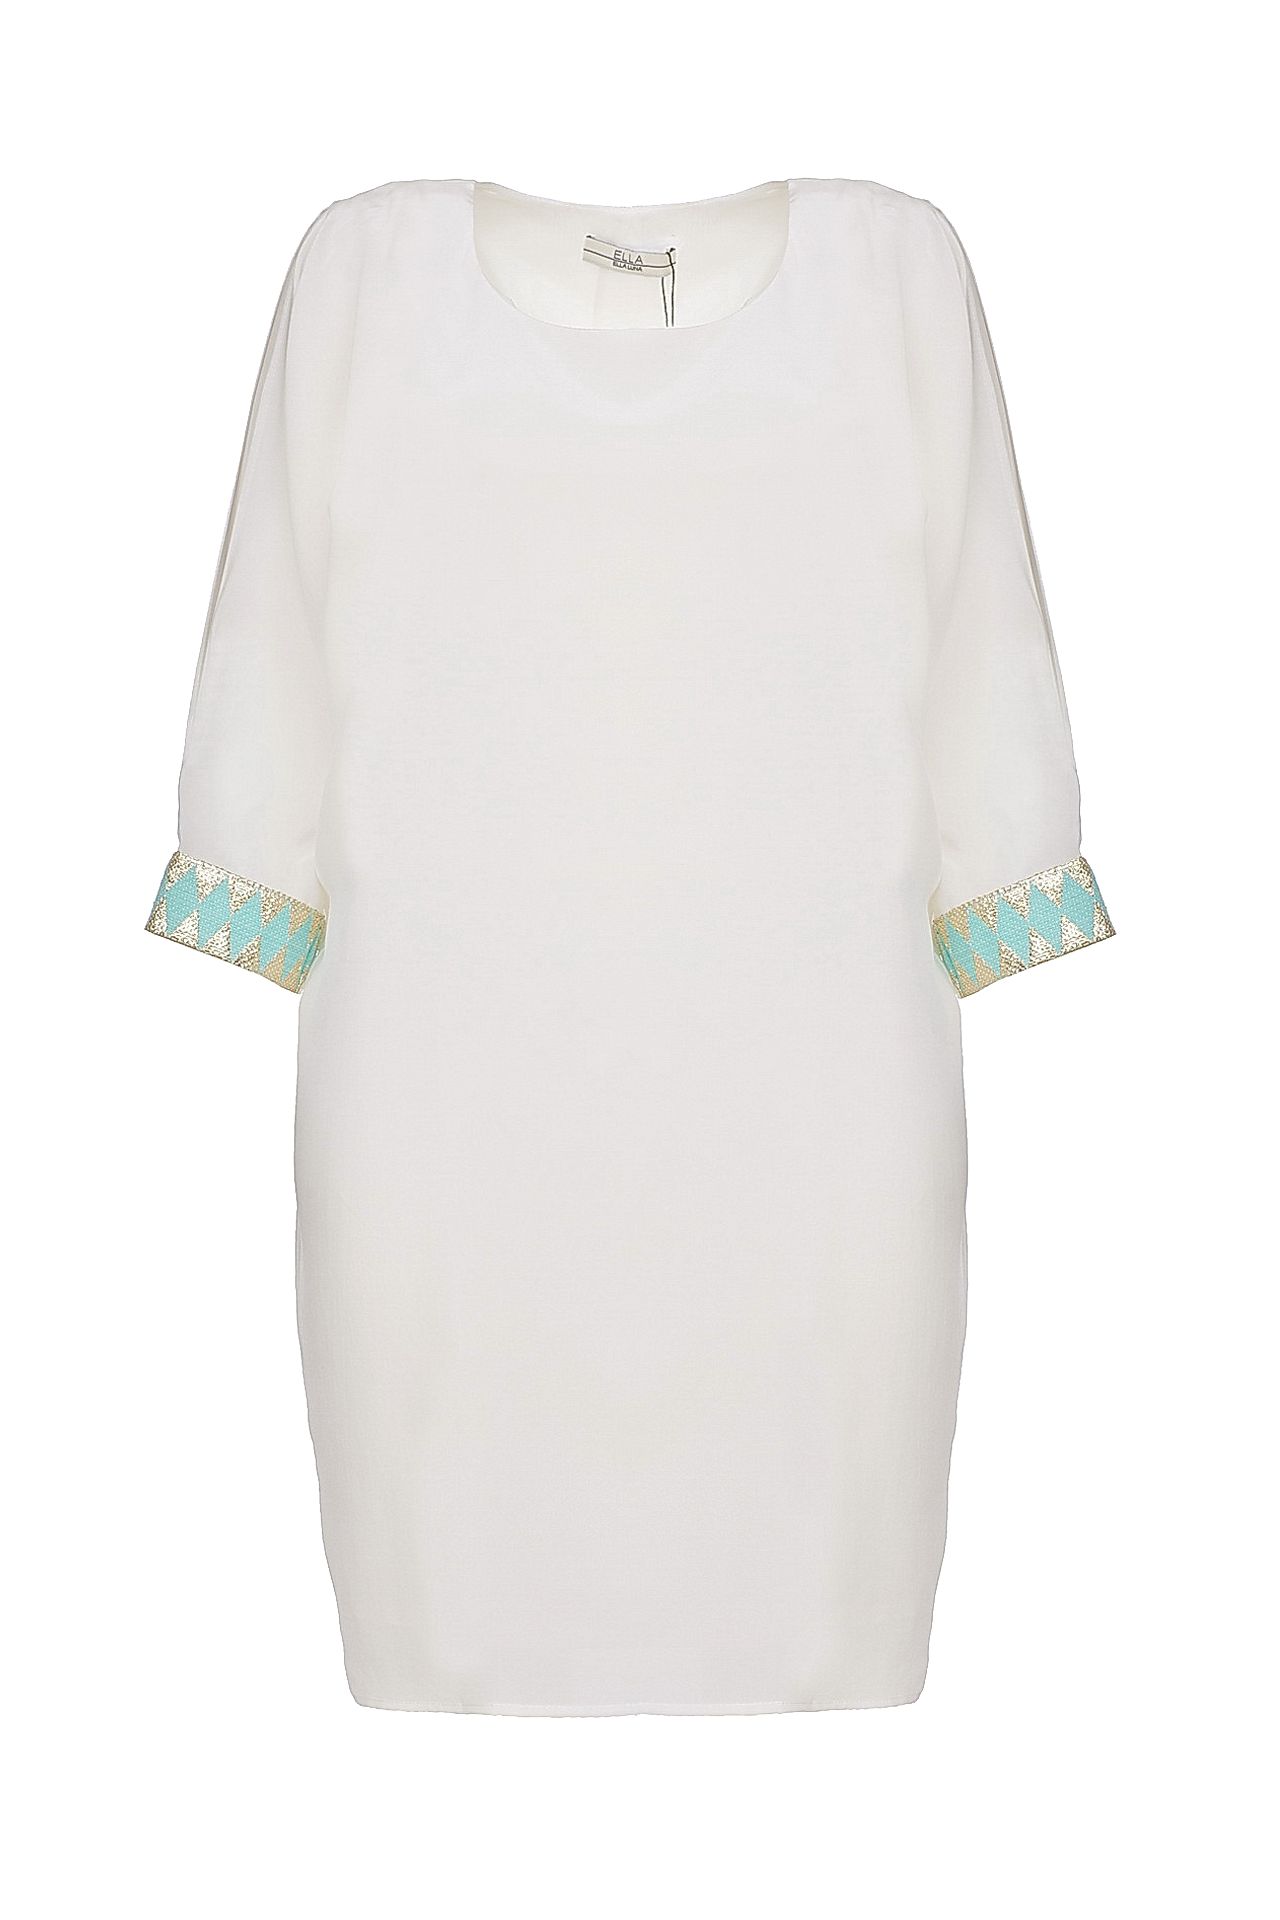 Одежда женская Платье ELLA LUNA (ECUME/14.2). Купить за 10430 руб.